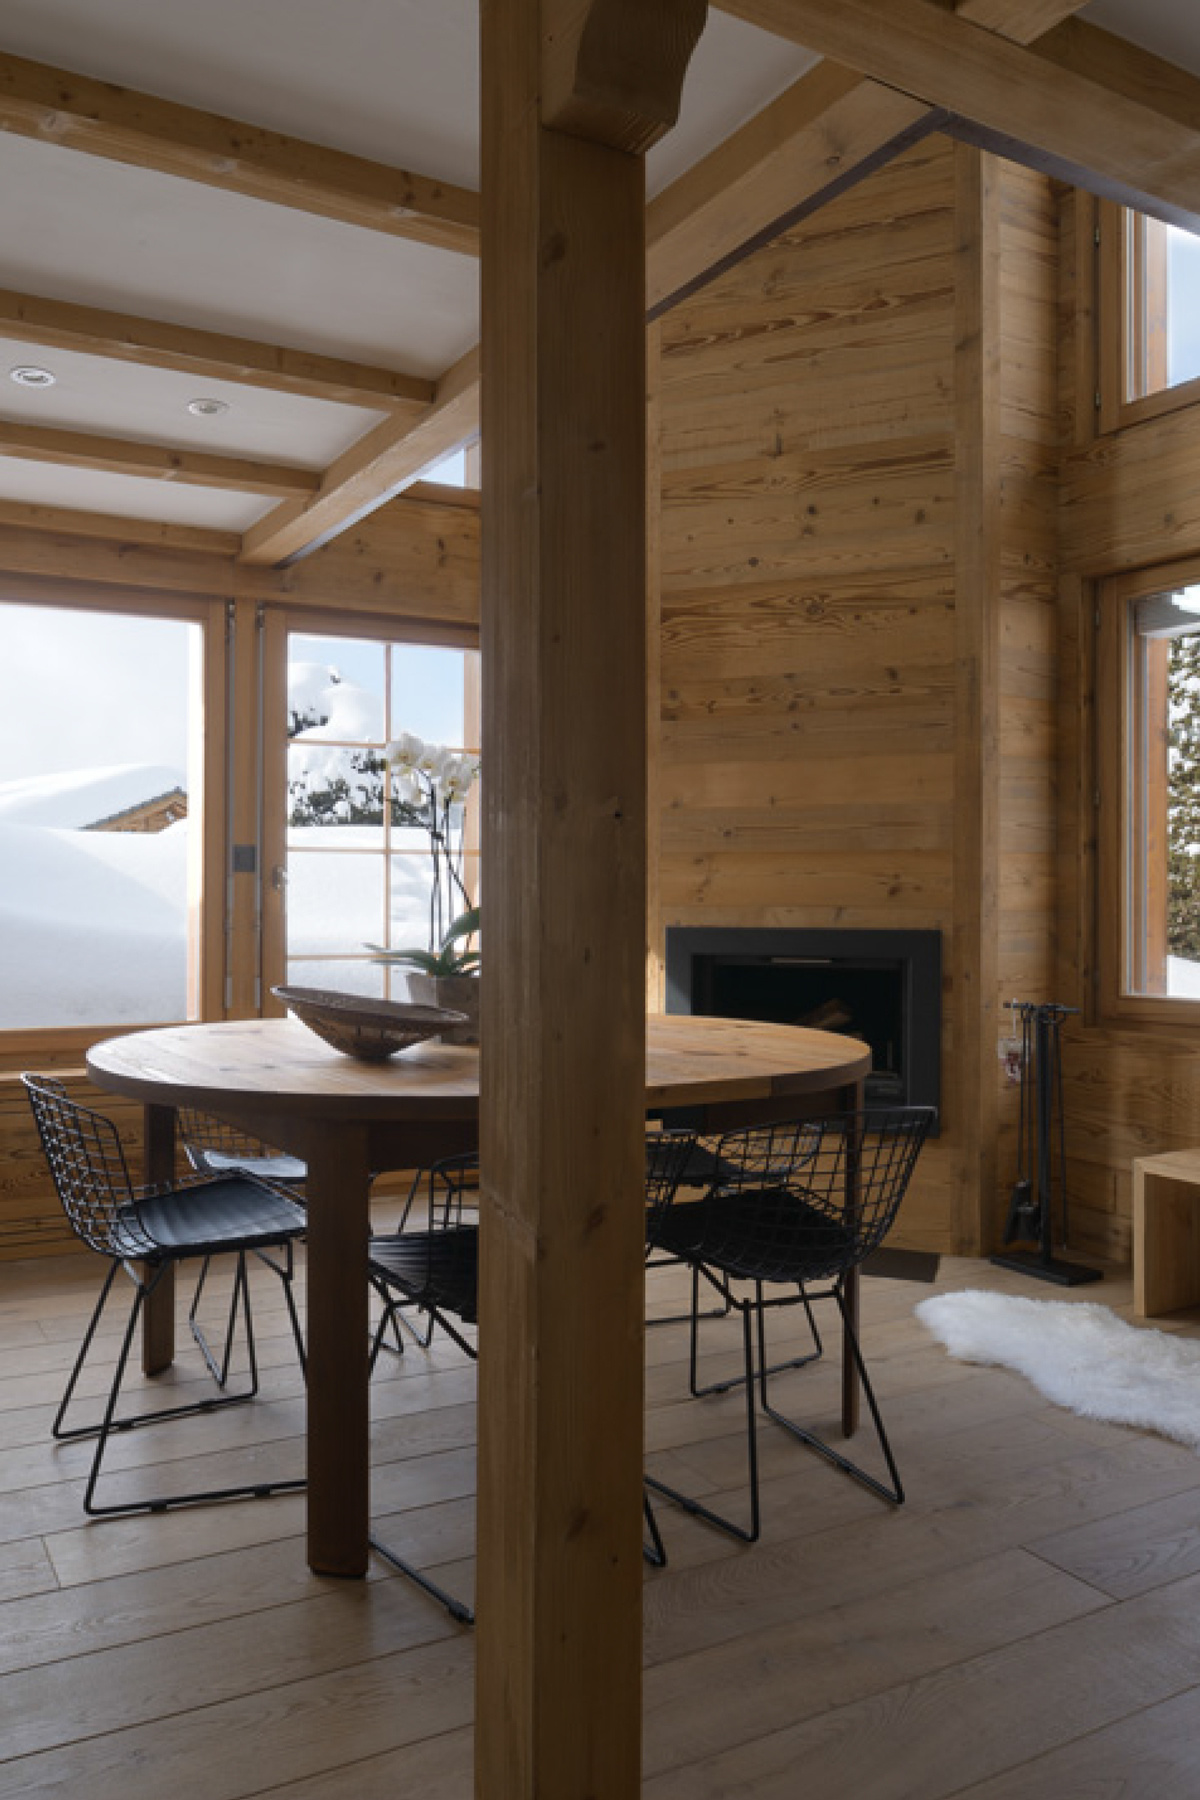 delikatissen tablones madera revestimiento lavabo piedra estilo nórdico estilo escandinavo estilo alpino chalet suizo casa montaña Casa de madera 